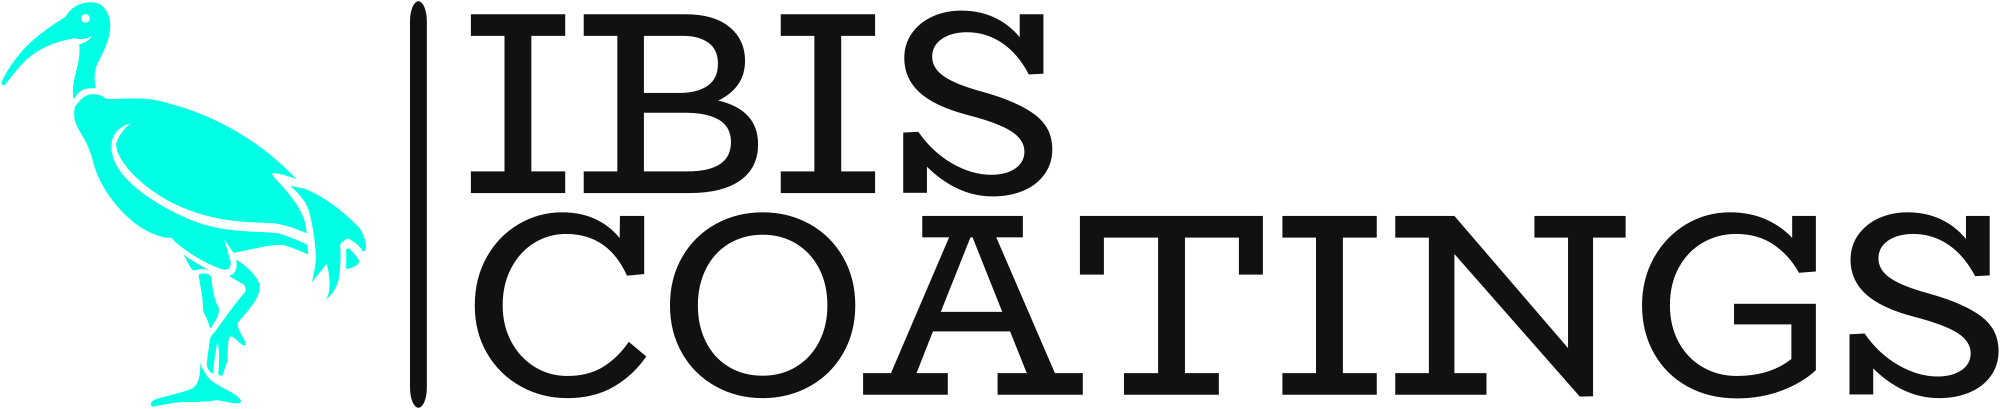 IBIS Coatings and Contracting, LLC Logo